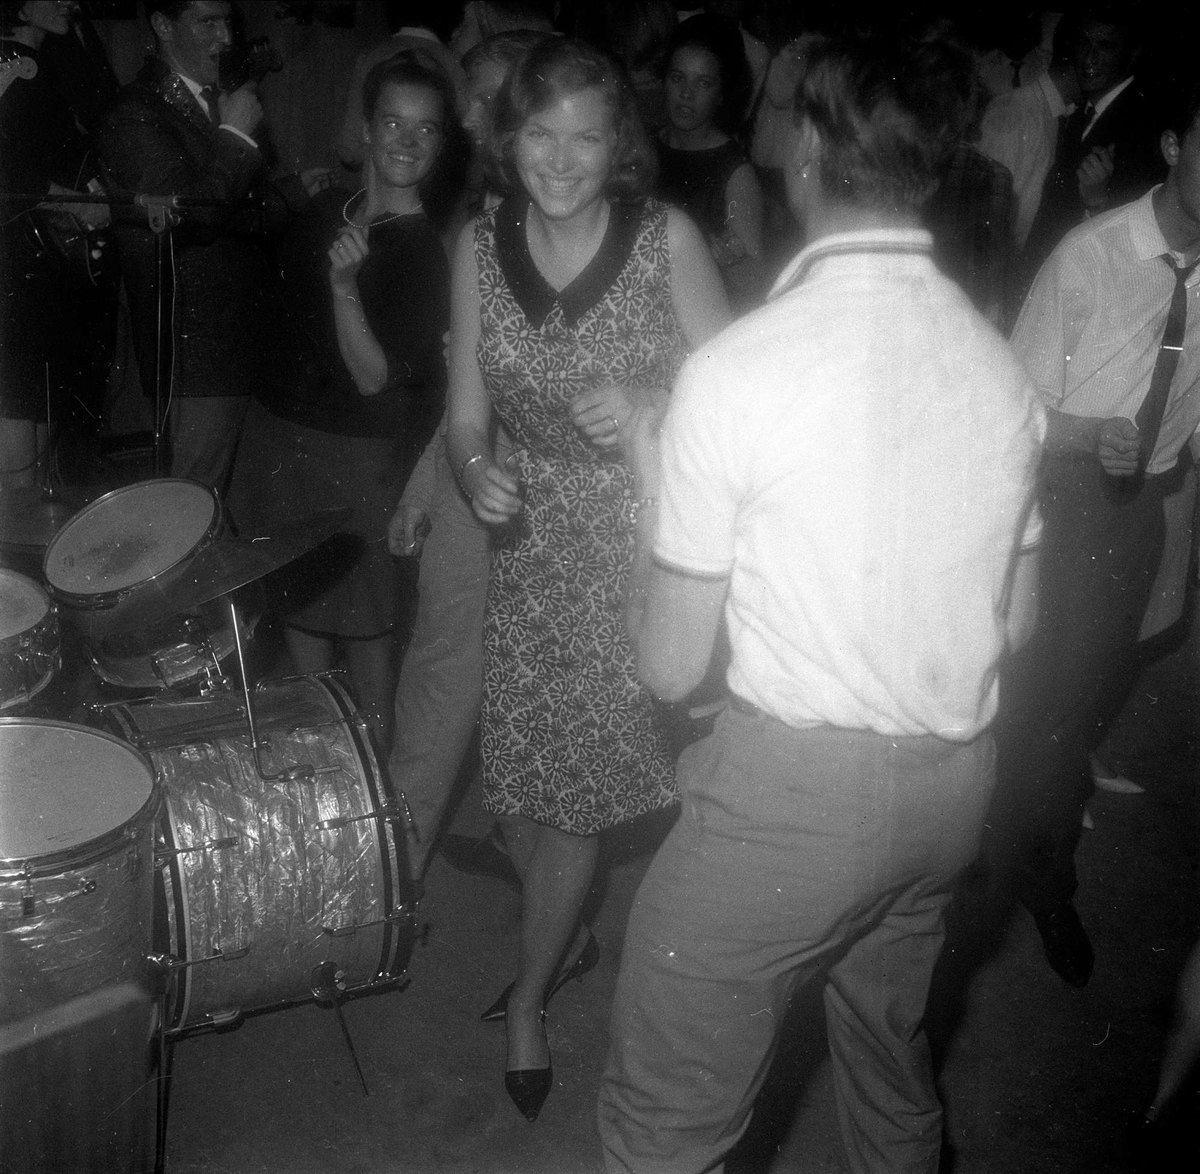 The Quartermasters spiller til dans på Club 52 på Toms Hotel i Bergen med Elin Jensen som sologitarist (Norges første kvinnelige), 16.06.1964.